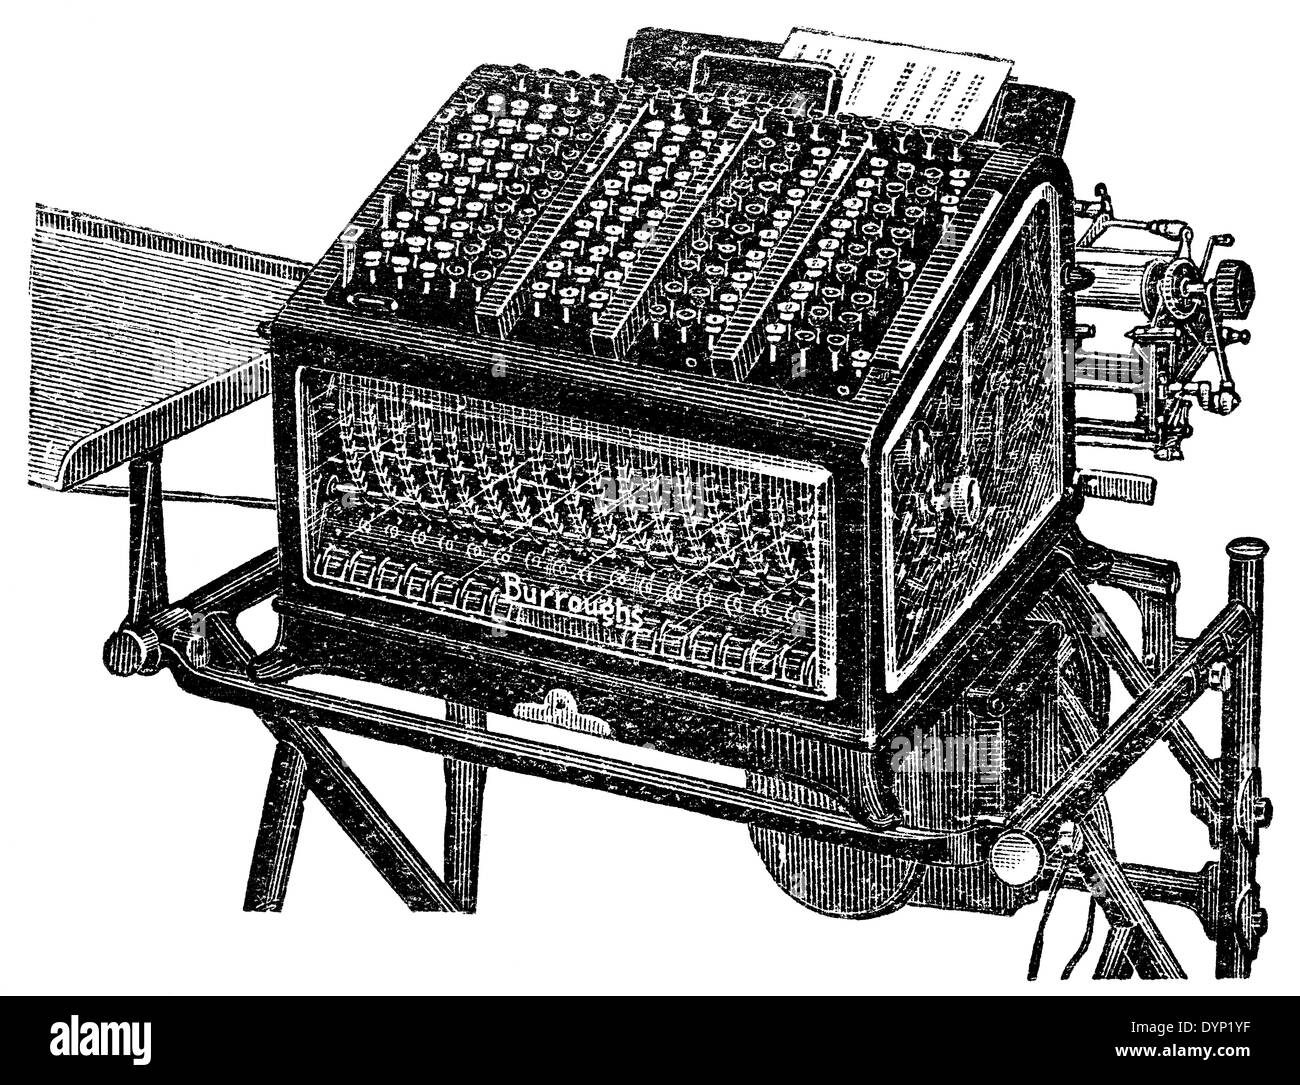 Vintage Computing réservez maintenant la machine de Burroughs, illustration de l'Encyclopédie Soviétique, 1927 Banque D'Images